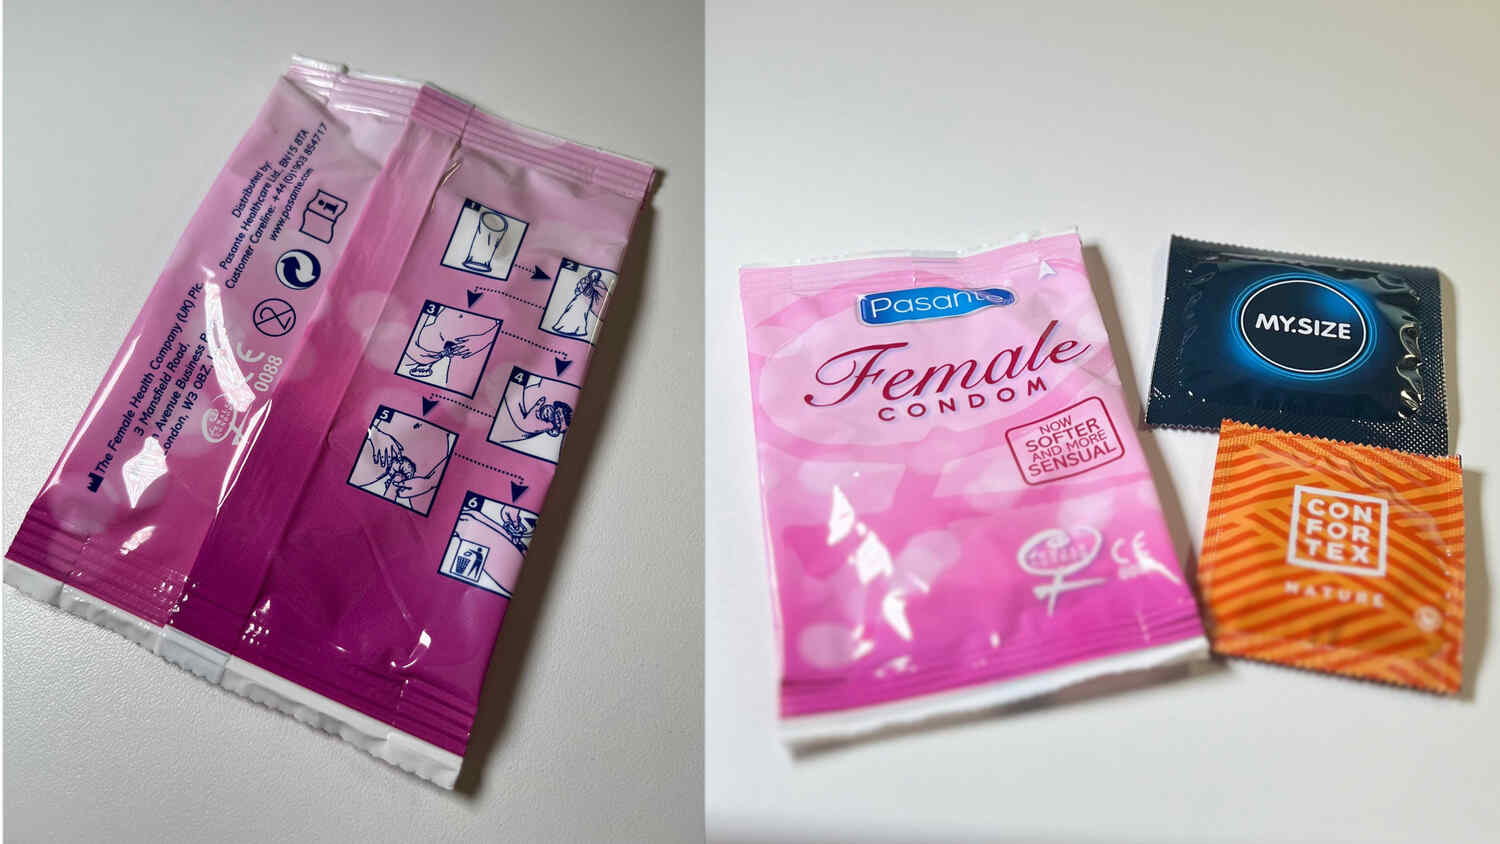 Vlevo: na ženském kondomu bývá často jednoduchý obrázkový návod, vpravo: porovnání s běžnými kondomy. Zdroj: Sexio.cz.